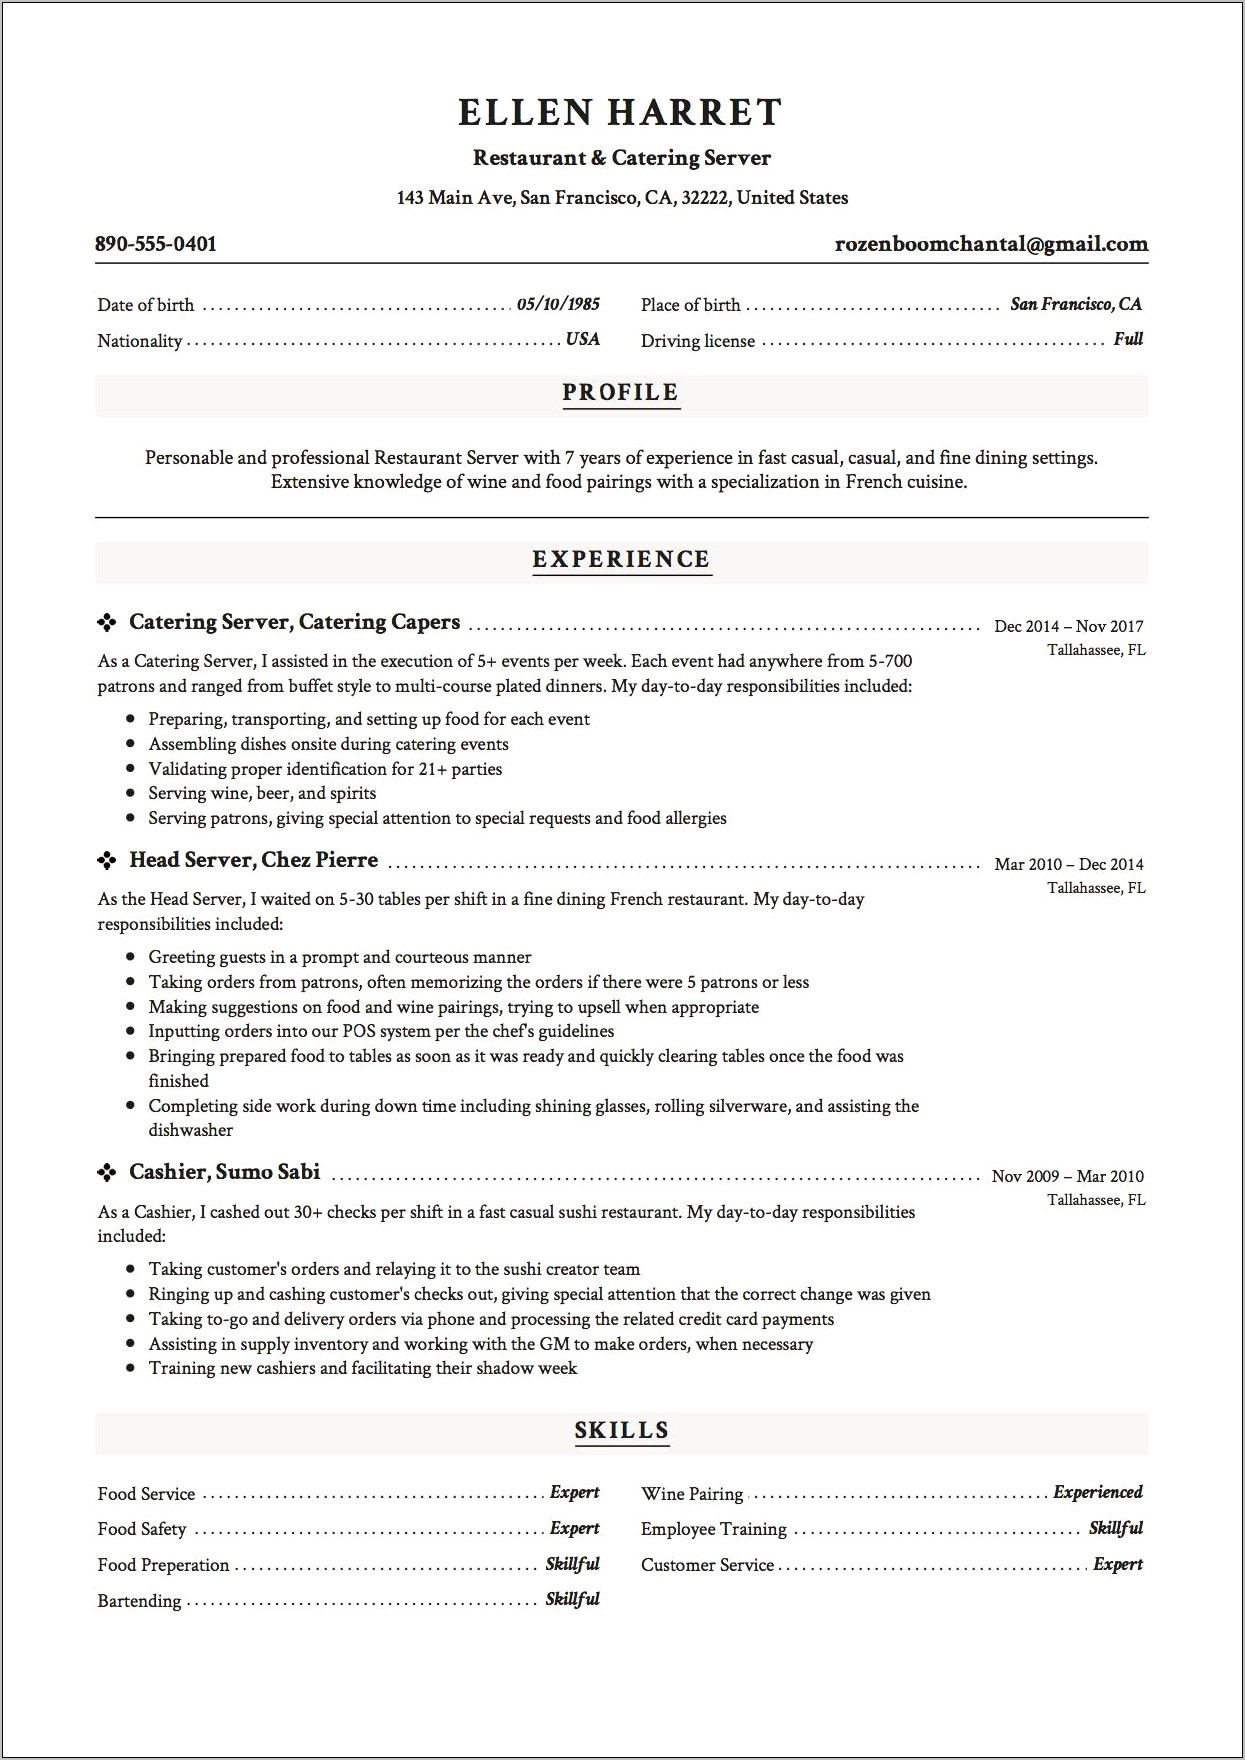 Resume Skills Summary For Waitress